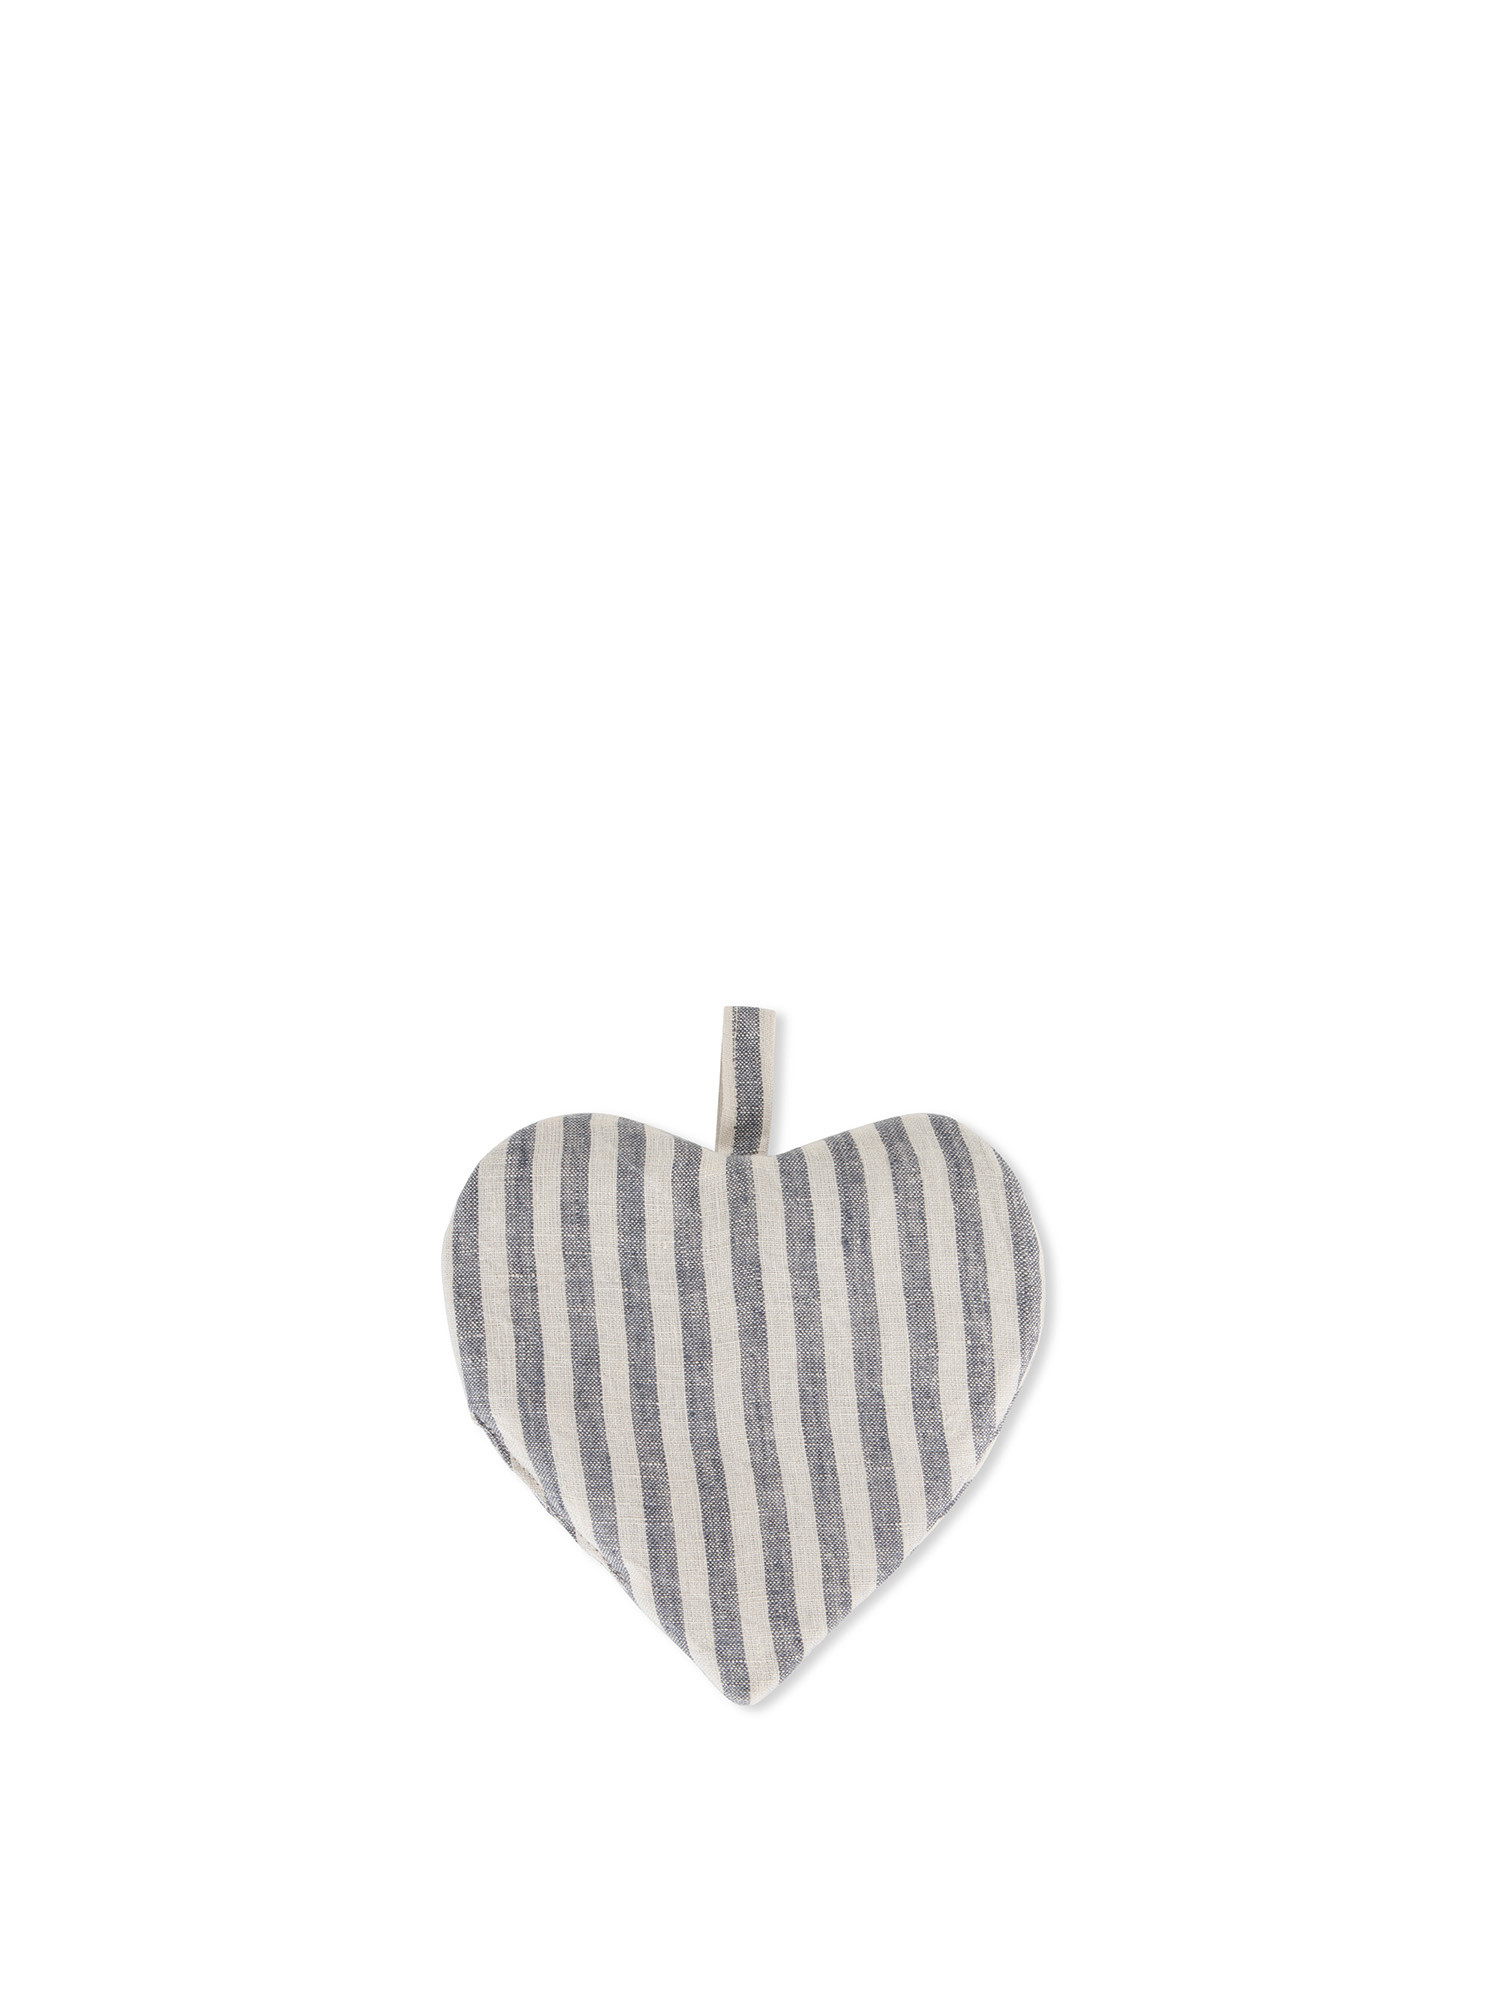 Heart-shaped pot holder in striped linen, Blue, large image number 0